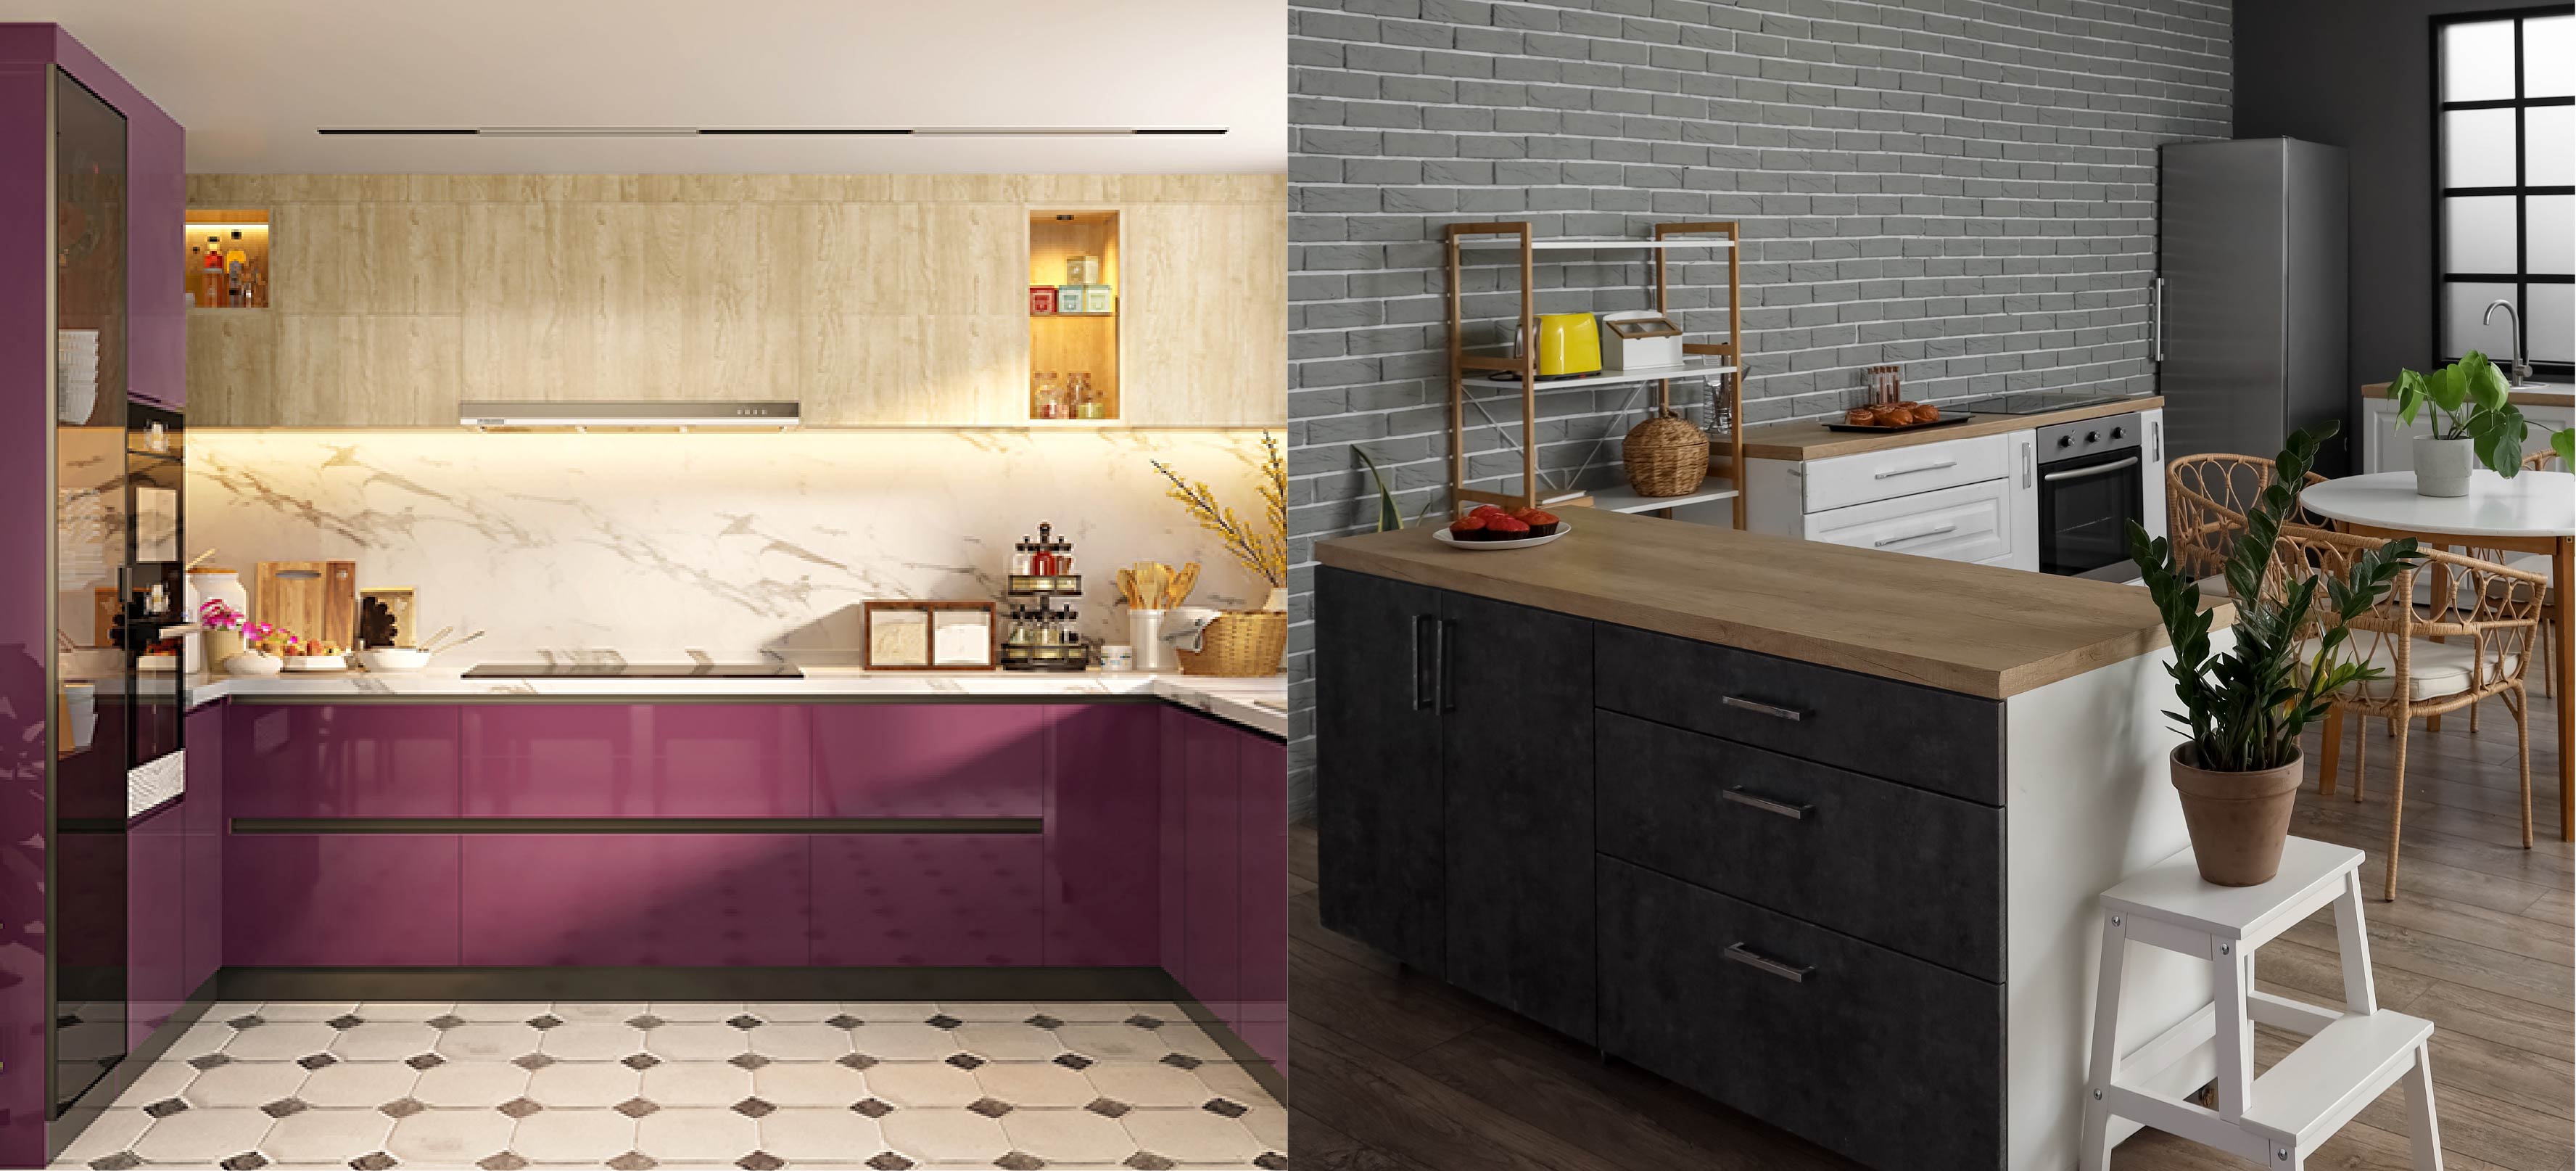 The right kitchen design for your kitchen: L shape vs U shaped modular kitchen